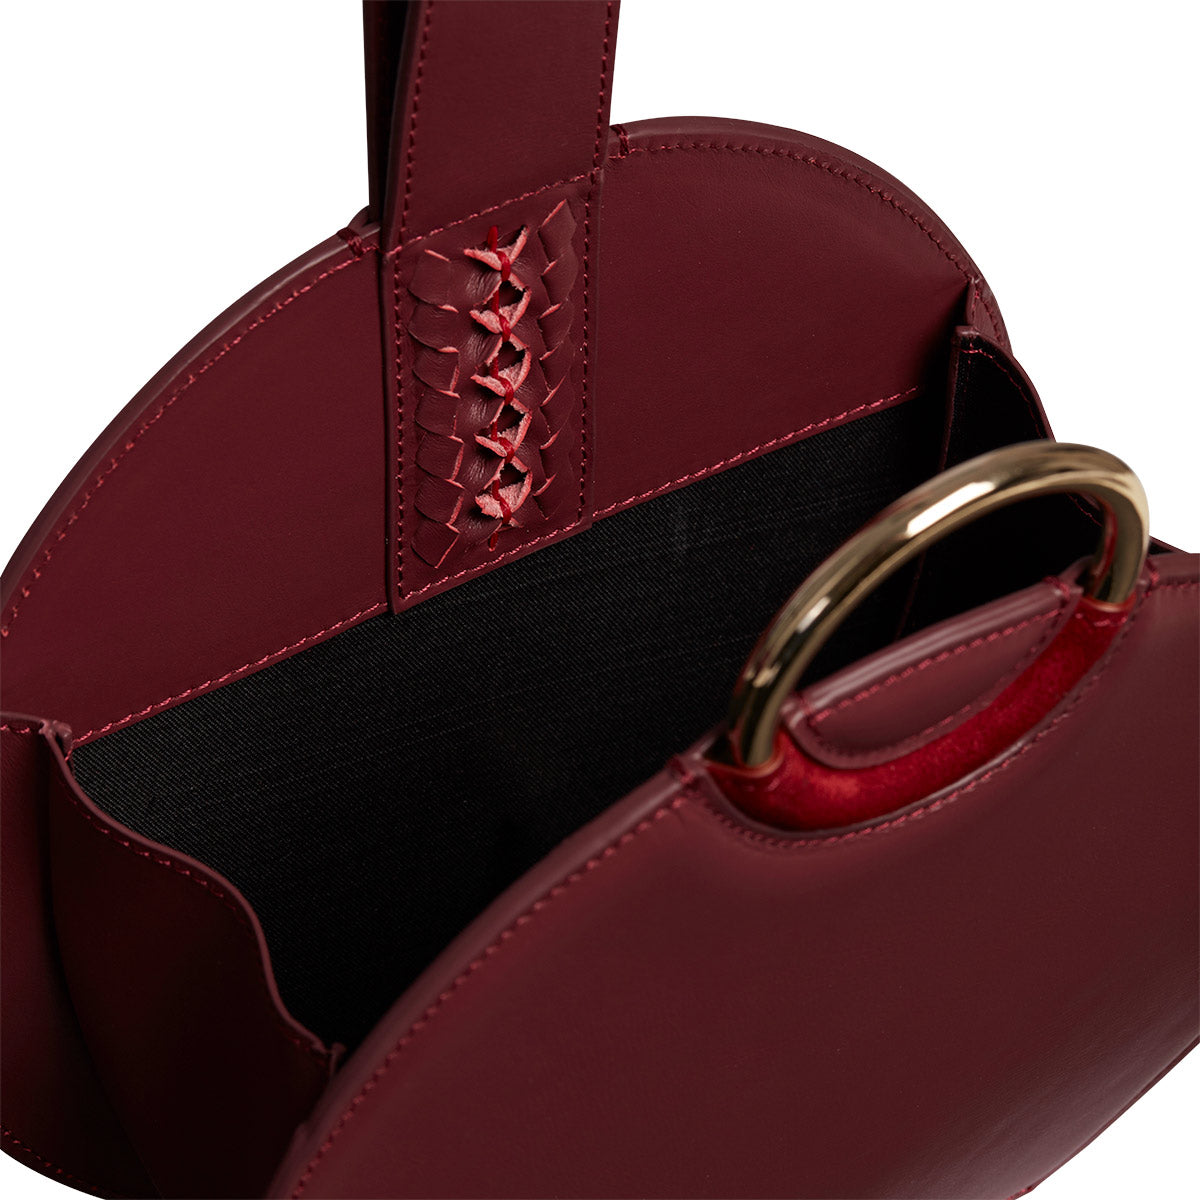 Burgundy Bags Styles, Prices - Trendyol